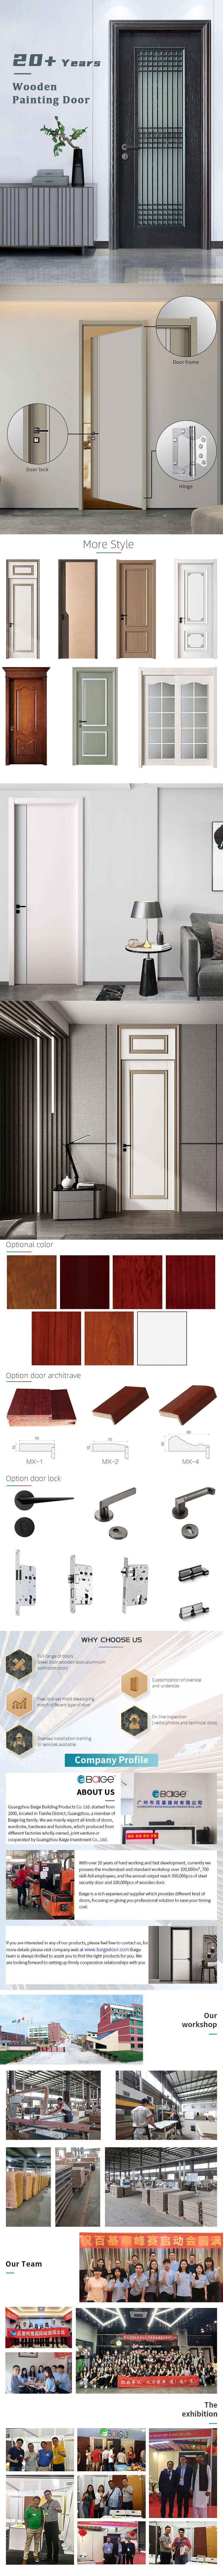 China Supplier Solid Wood Door for Bedroom